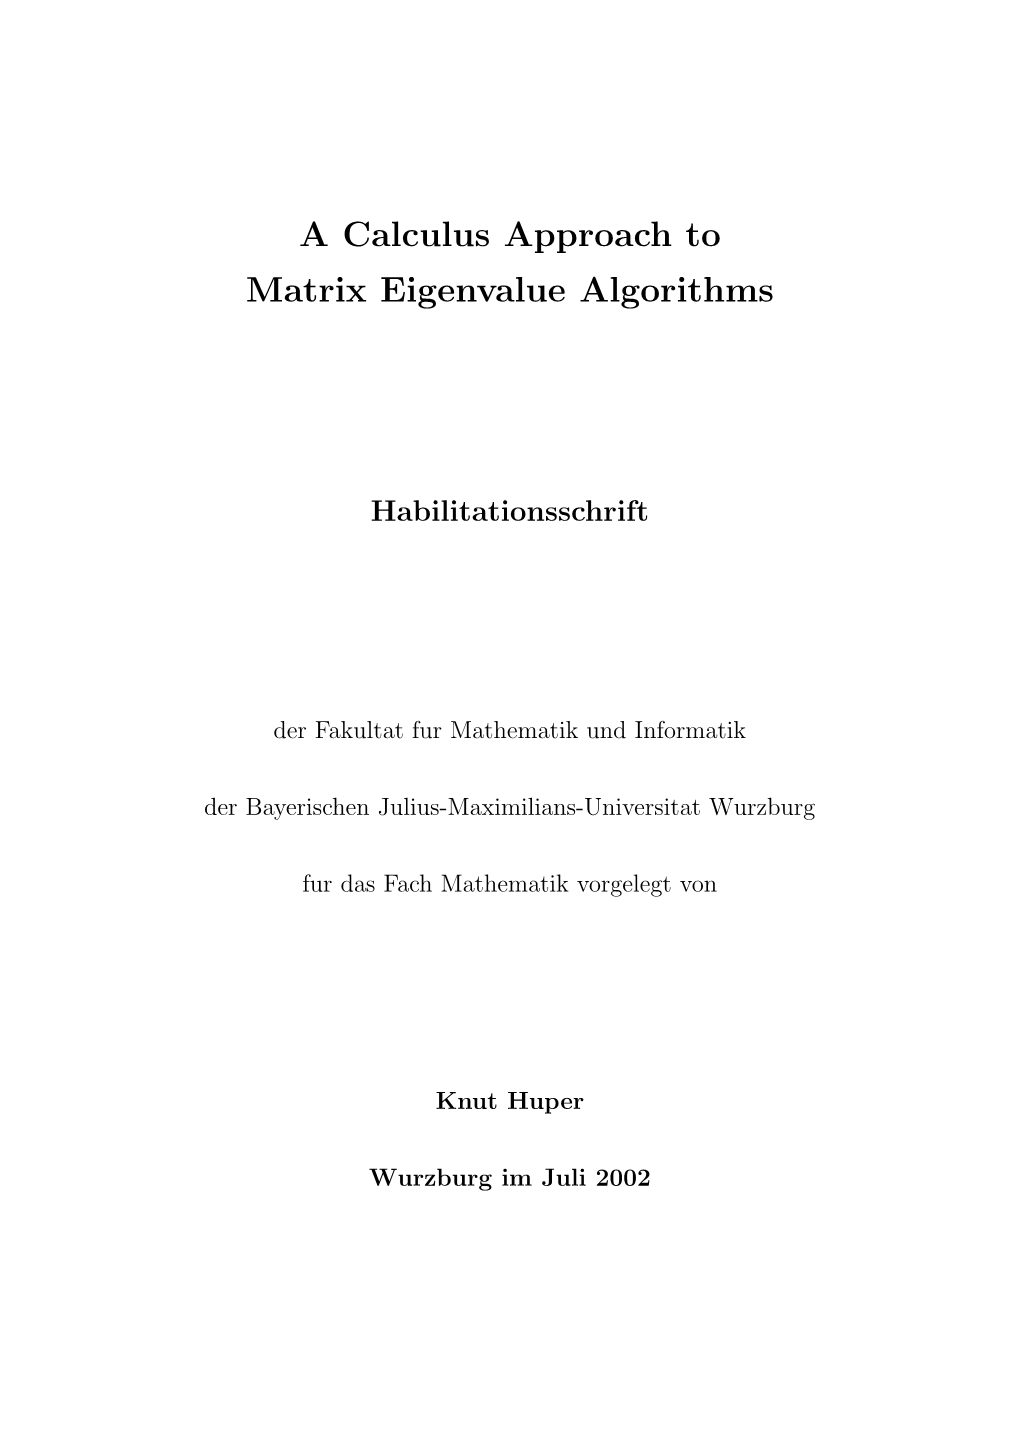 A Calculus Approach to Matrix Eigenvalue Algorithms